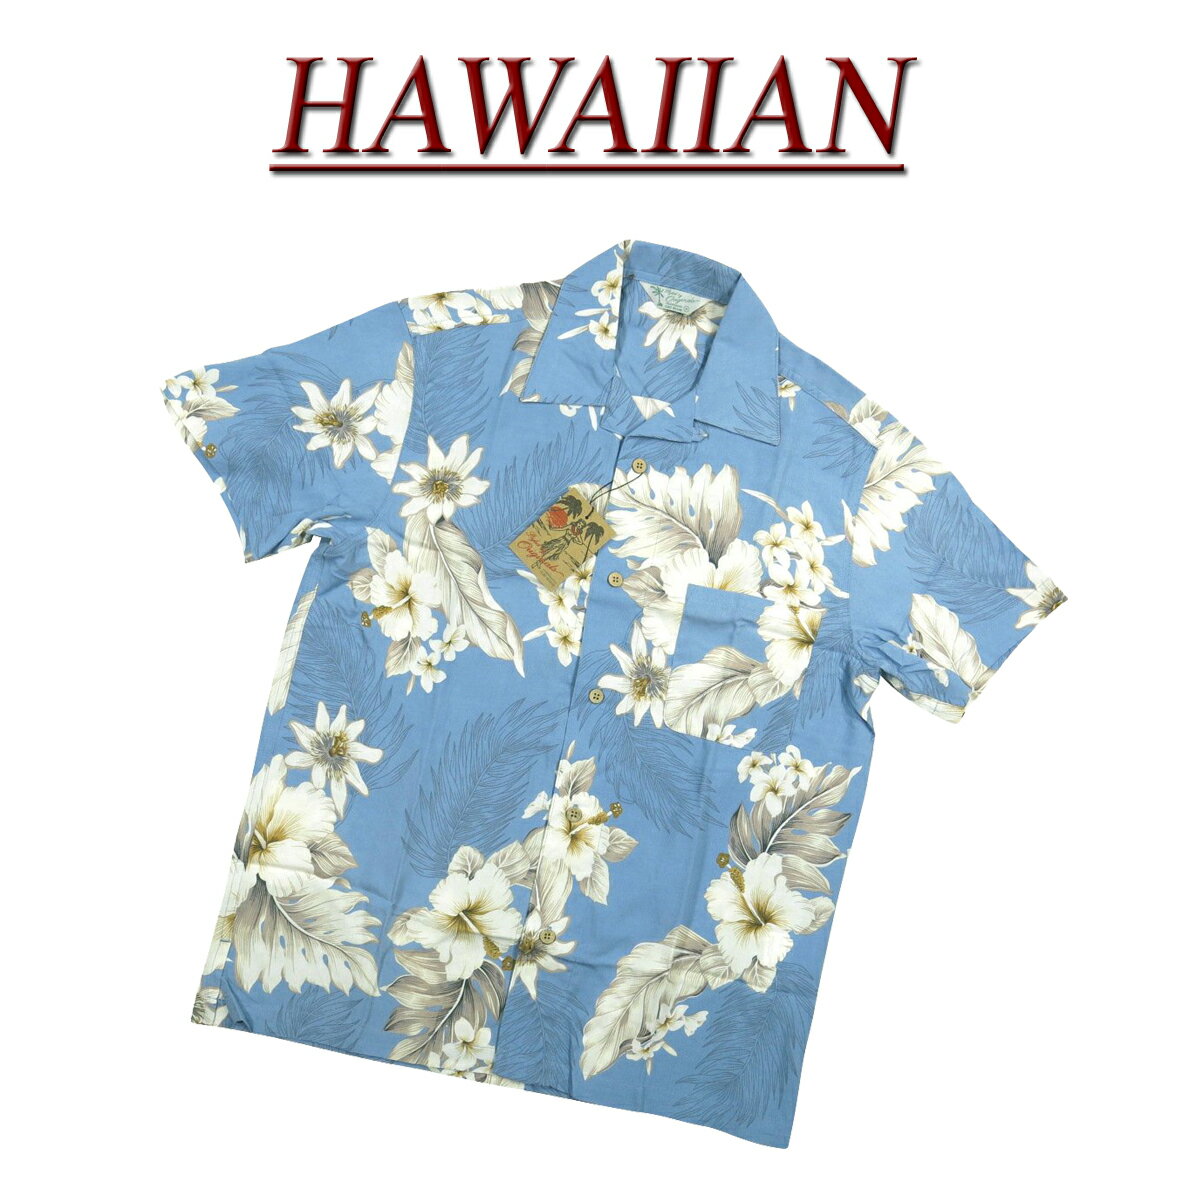  wu482 新品 ハイビスカス 花柄 半袖 レーヨン100% アロハシャツ メンズ アロハ ハワイアンシャツ  (ビッグサイズあります!)